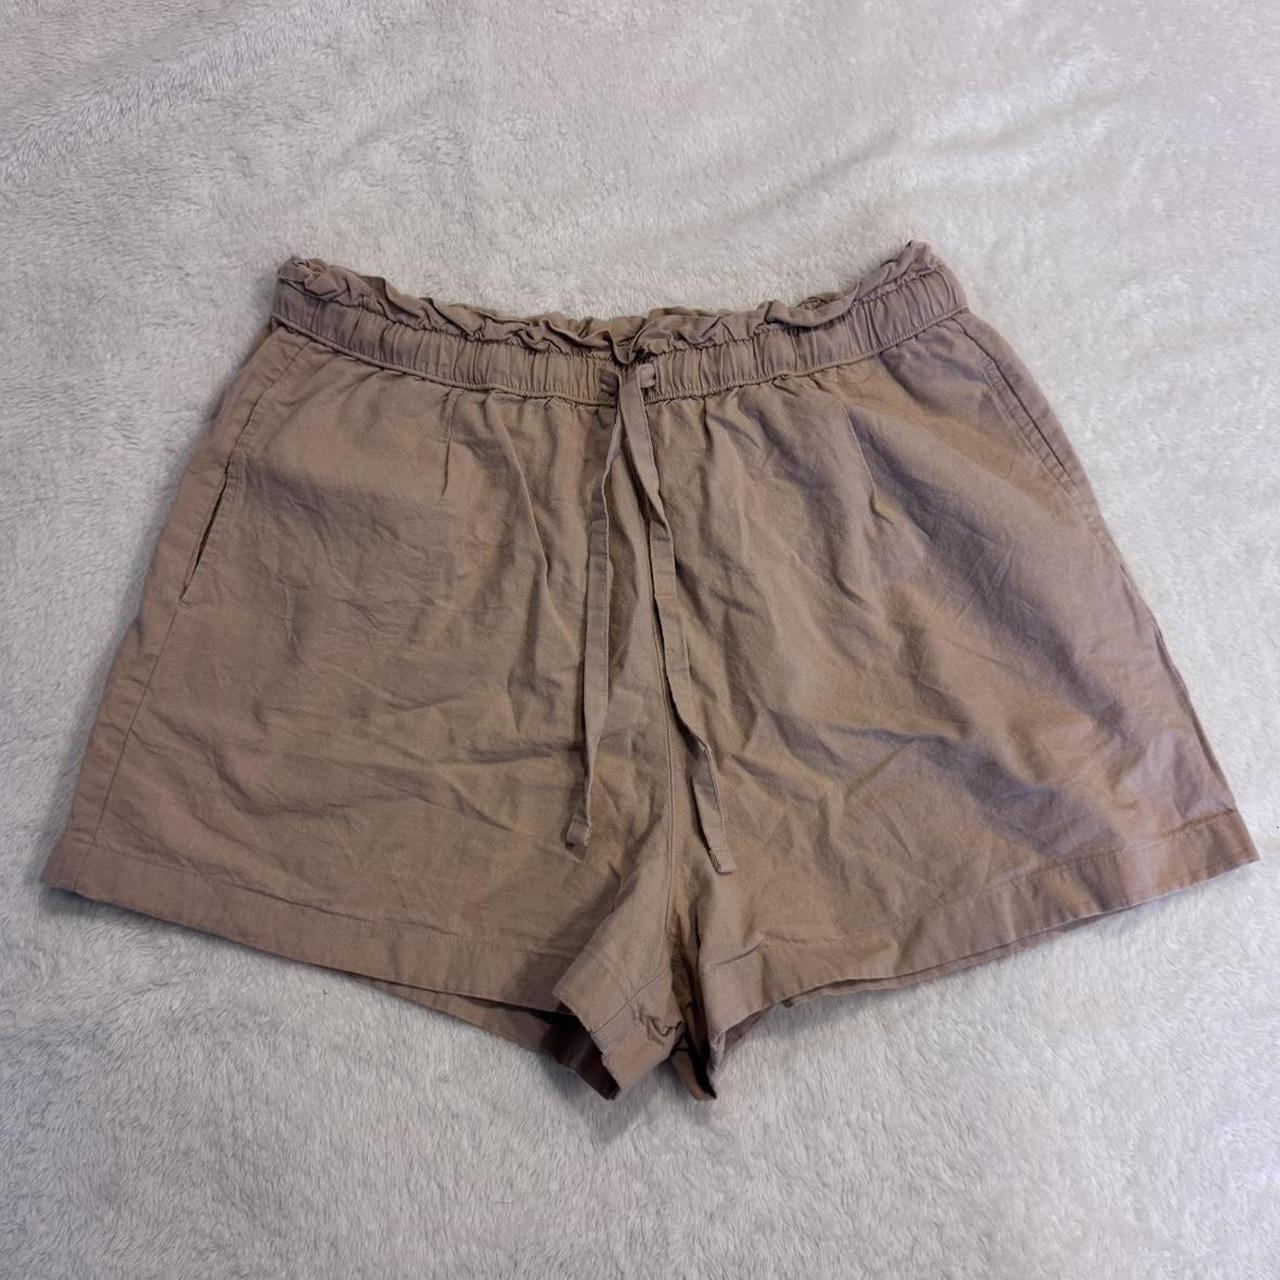 Men's Uniqlo AIRism Cotton Easy Shorts 8” Size - Depop